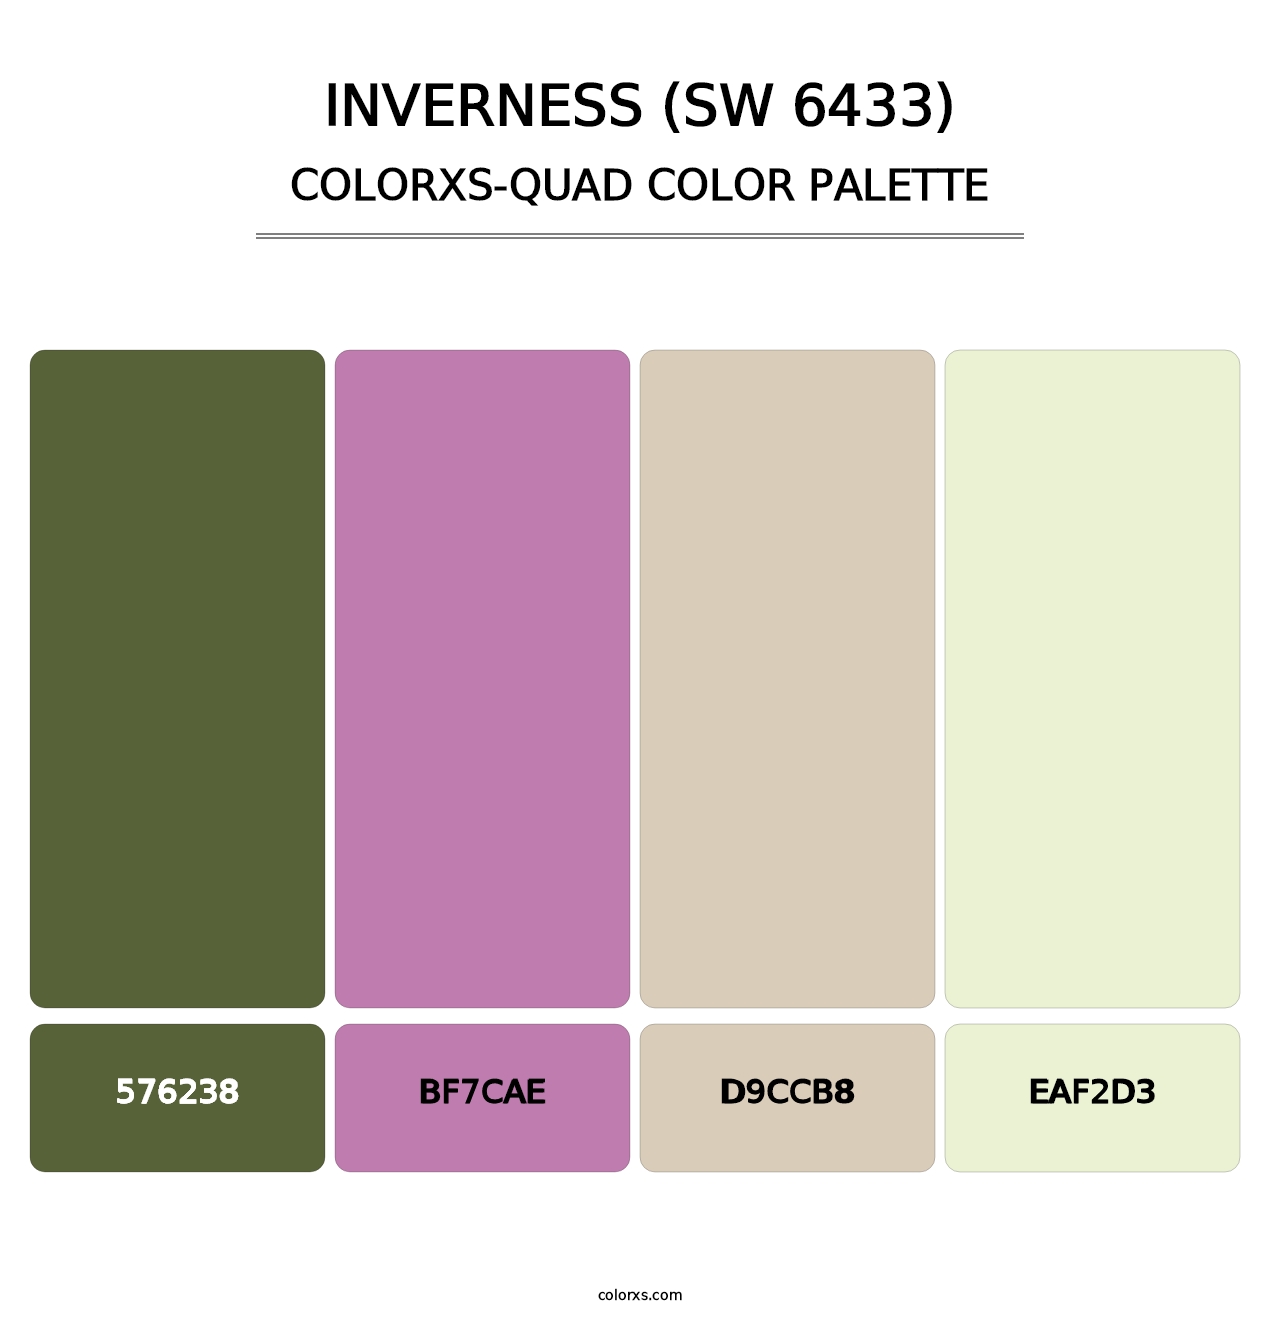 Inverness (SW 6433) - Colorxs Quad Palette